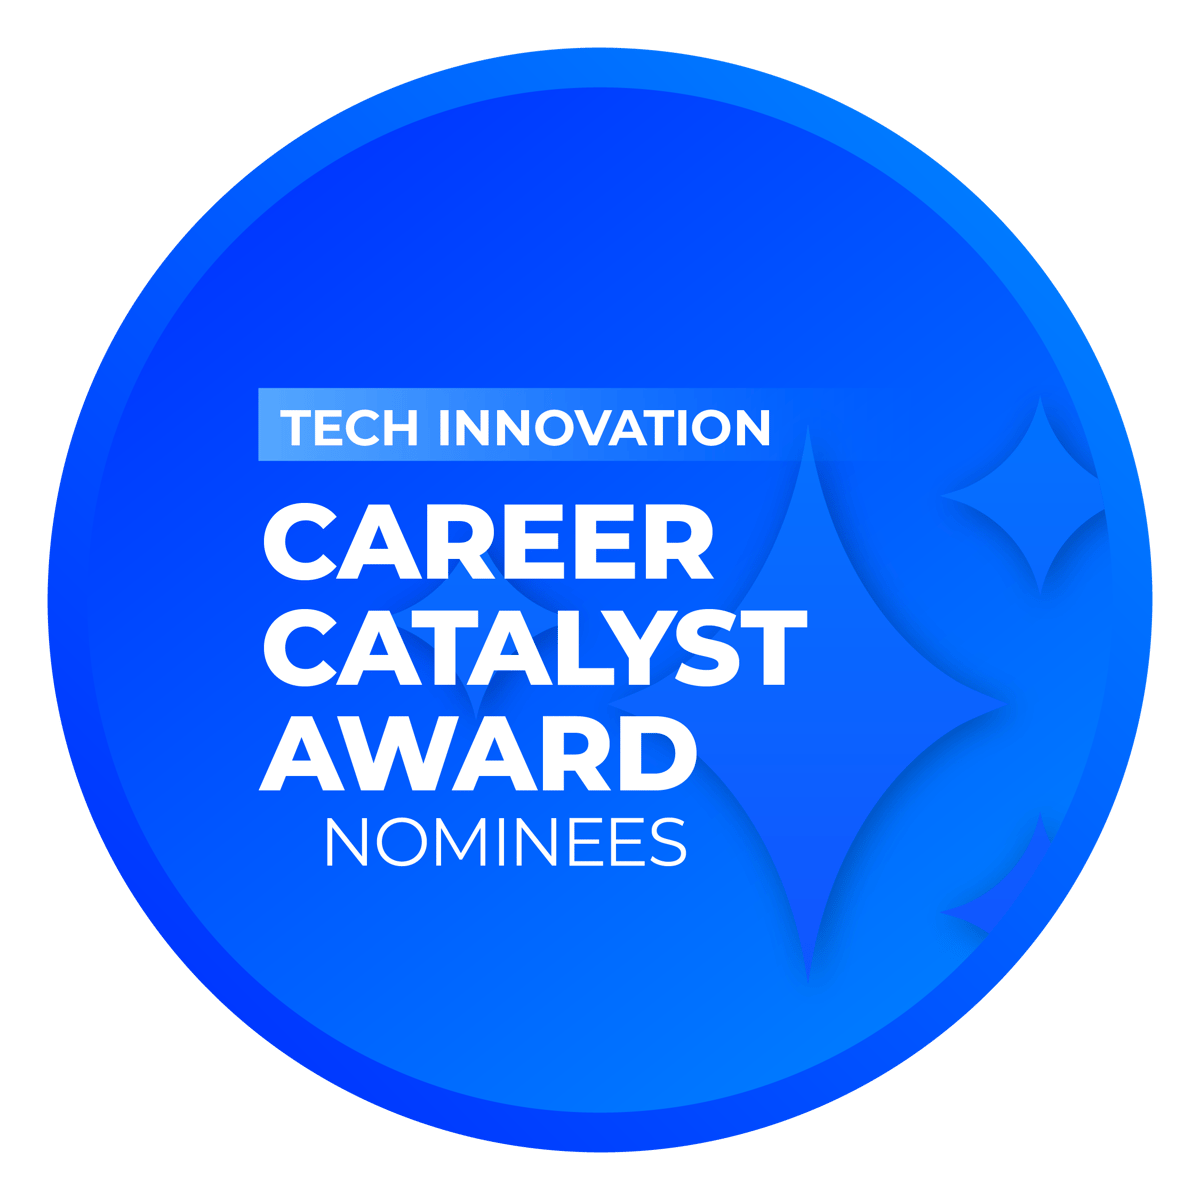 Career Catalyst Award: Tech Innovation Nominees